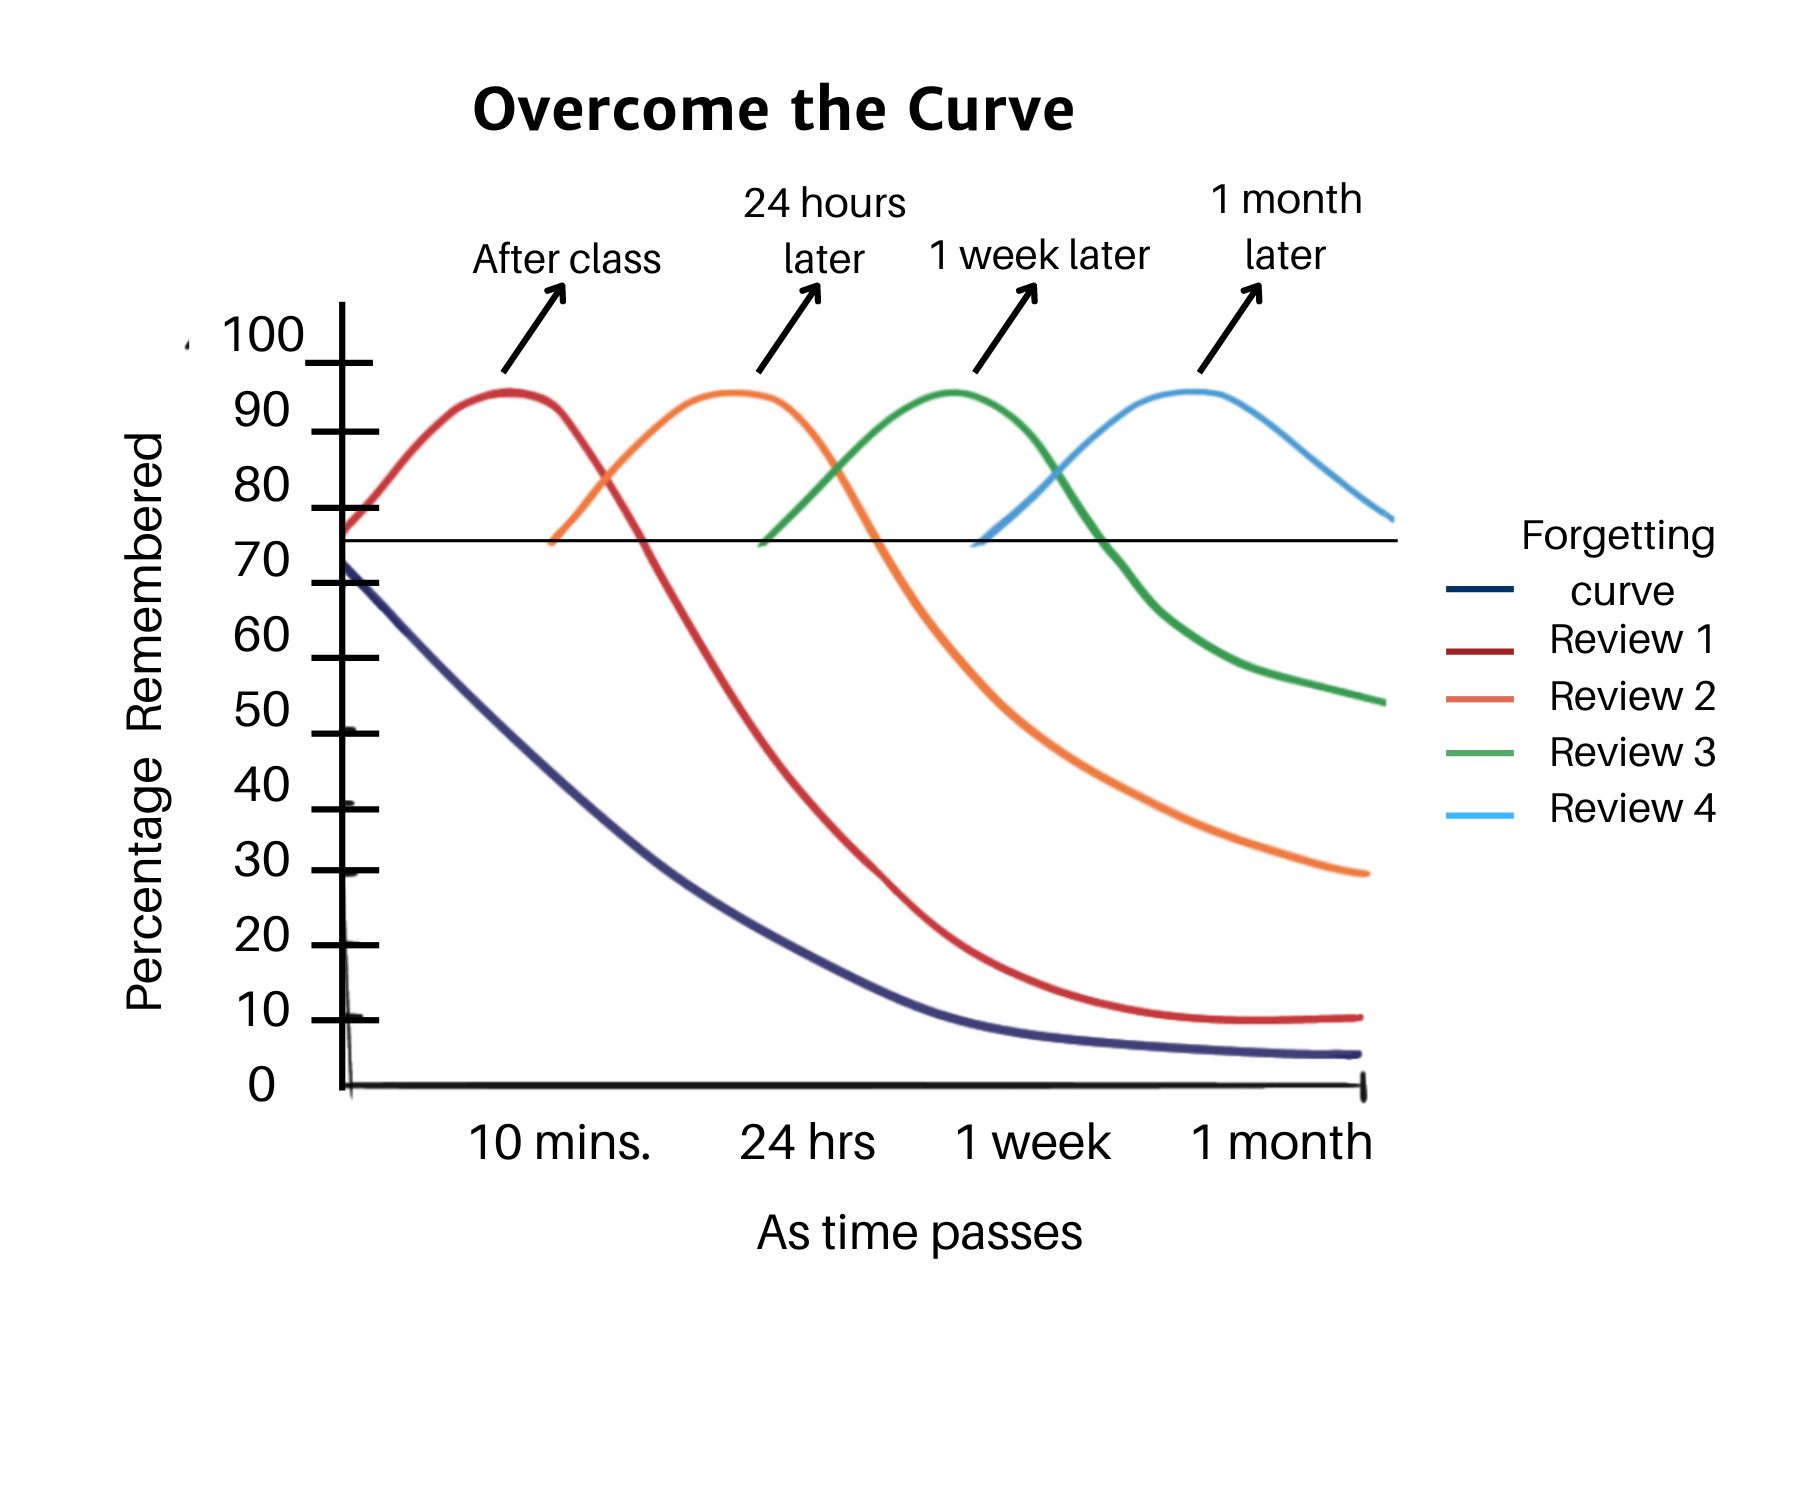 Overcome the Curve graph